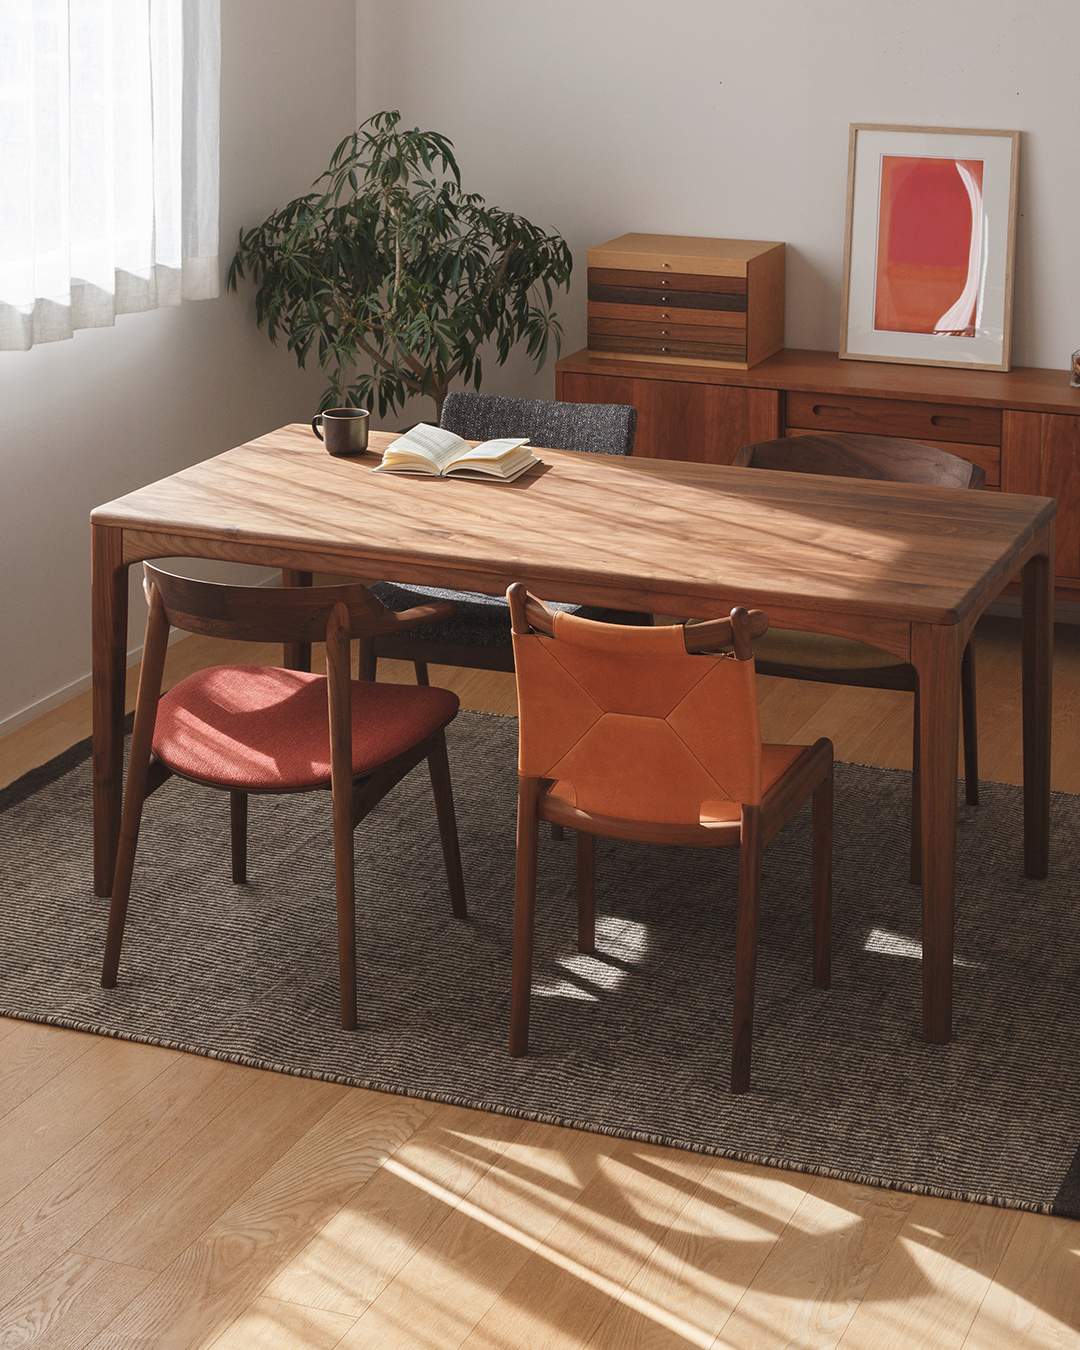 アーチレッグダイニングテーブル / 丁寧に仕上げられた丸みのあるデザインで北欧風の細身の椅子とも相性抜群です。